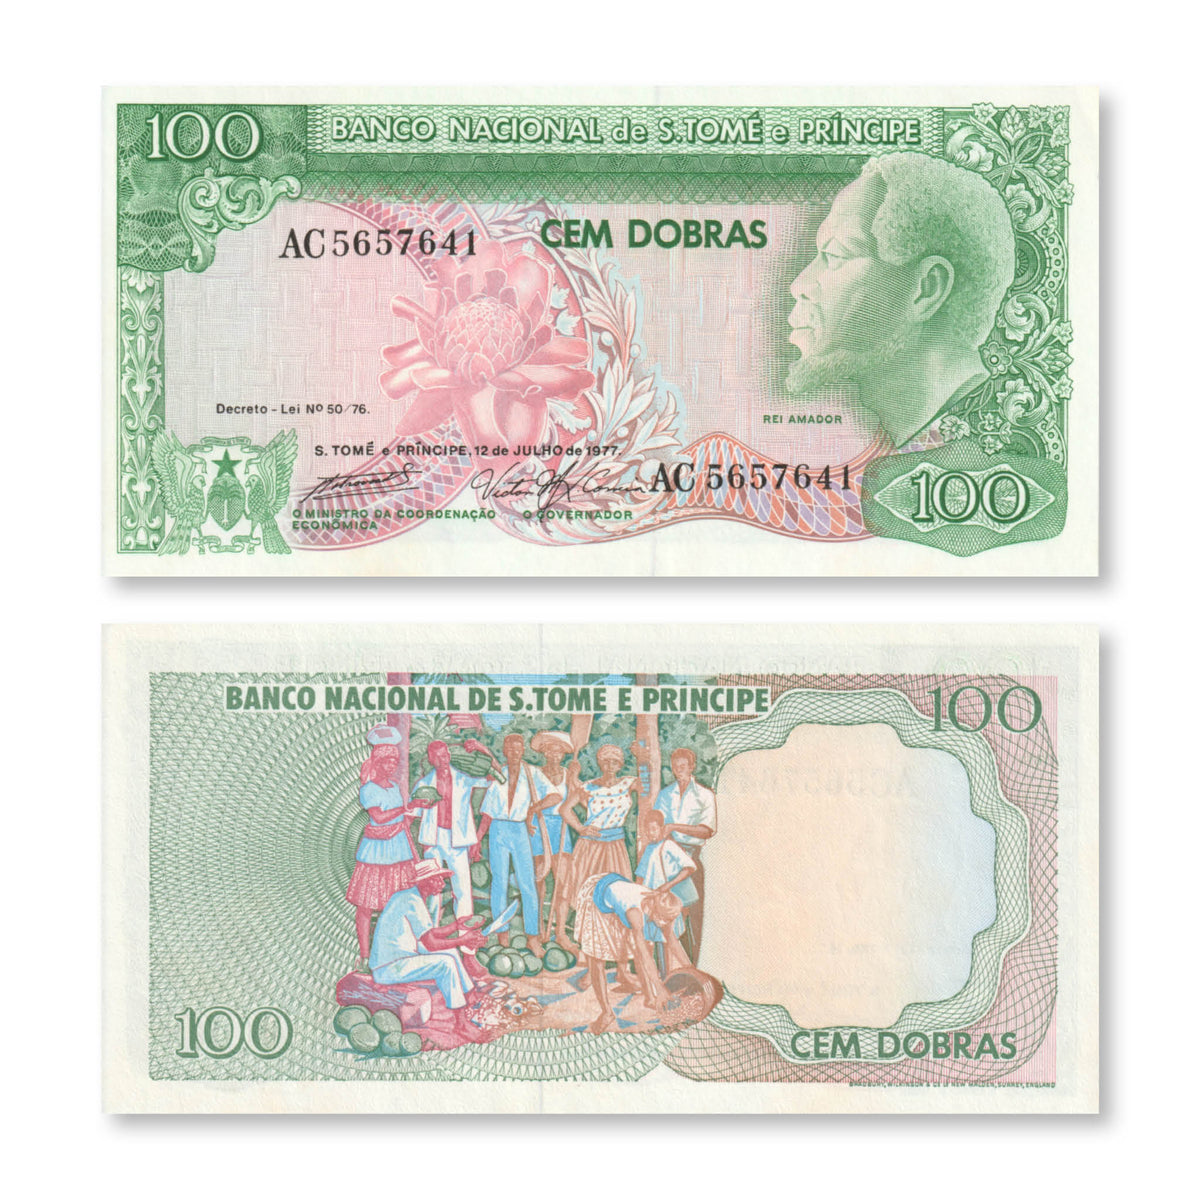 São Tomé & Príncipe 100 Dobras, 1977, B209a, P53a, UNC - Robert's World Money - World Banknotes